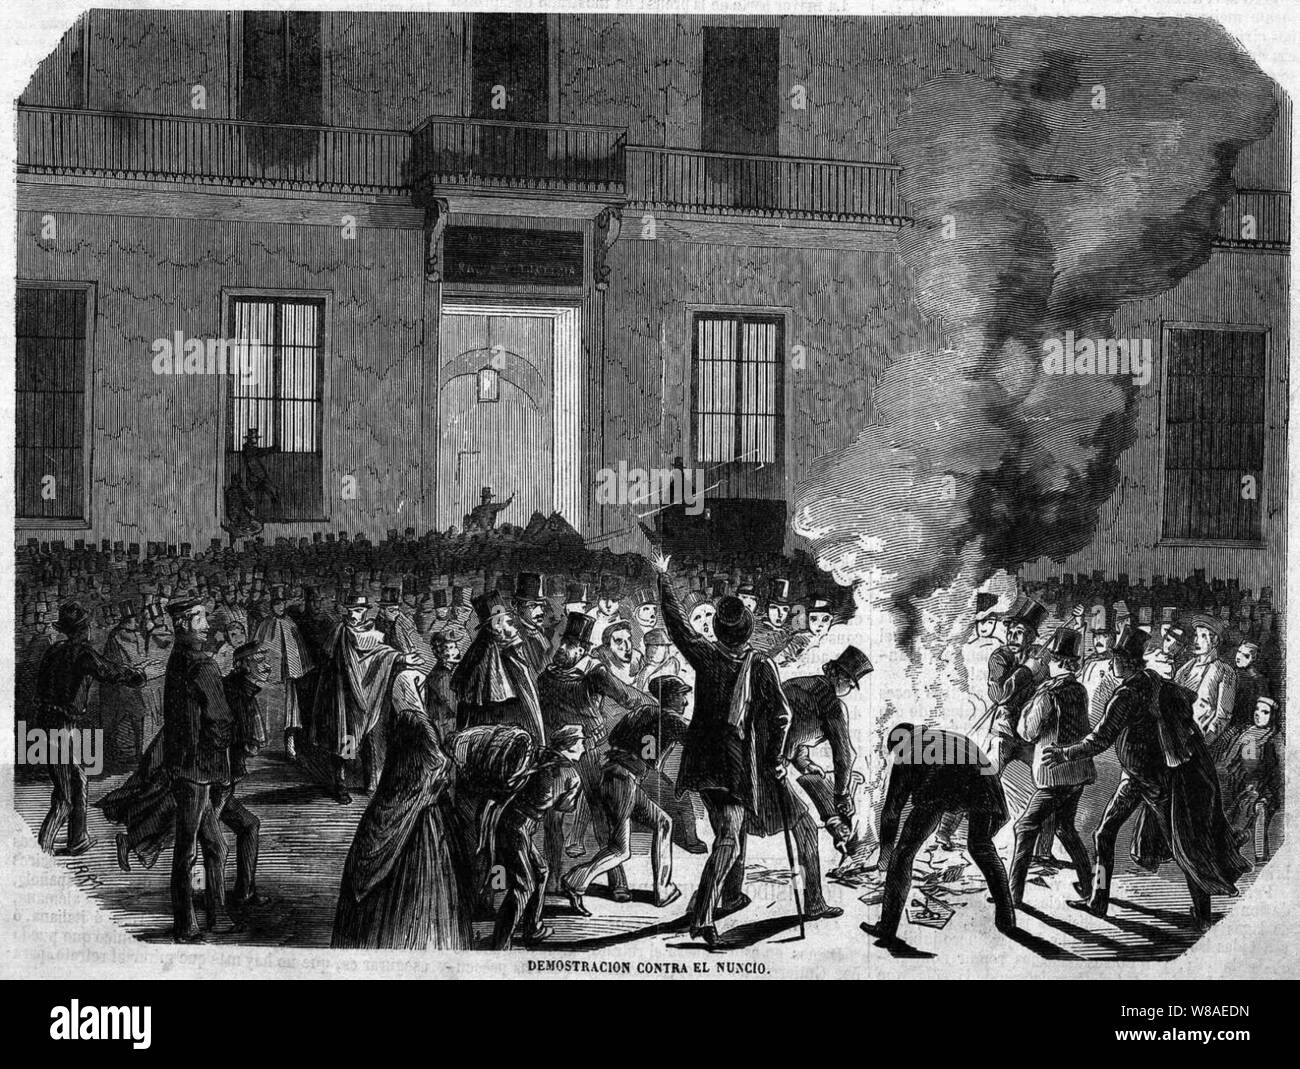 Demostración contra el nuncio, 26 de enero de 1869, Madrid. Stock Photo